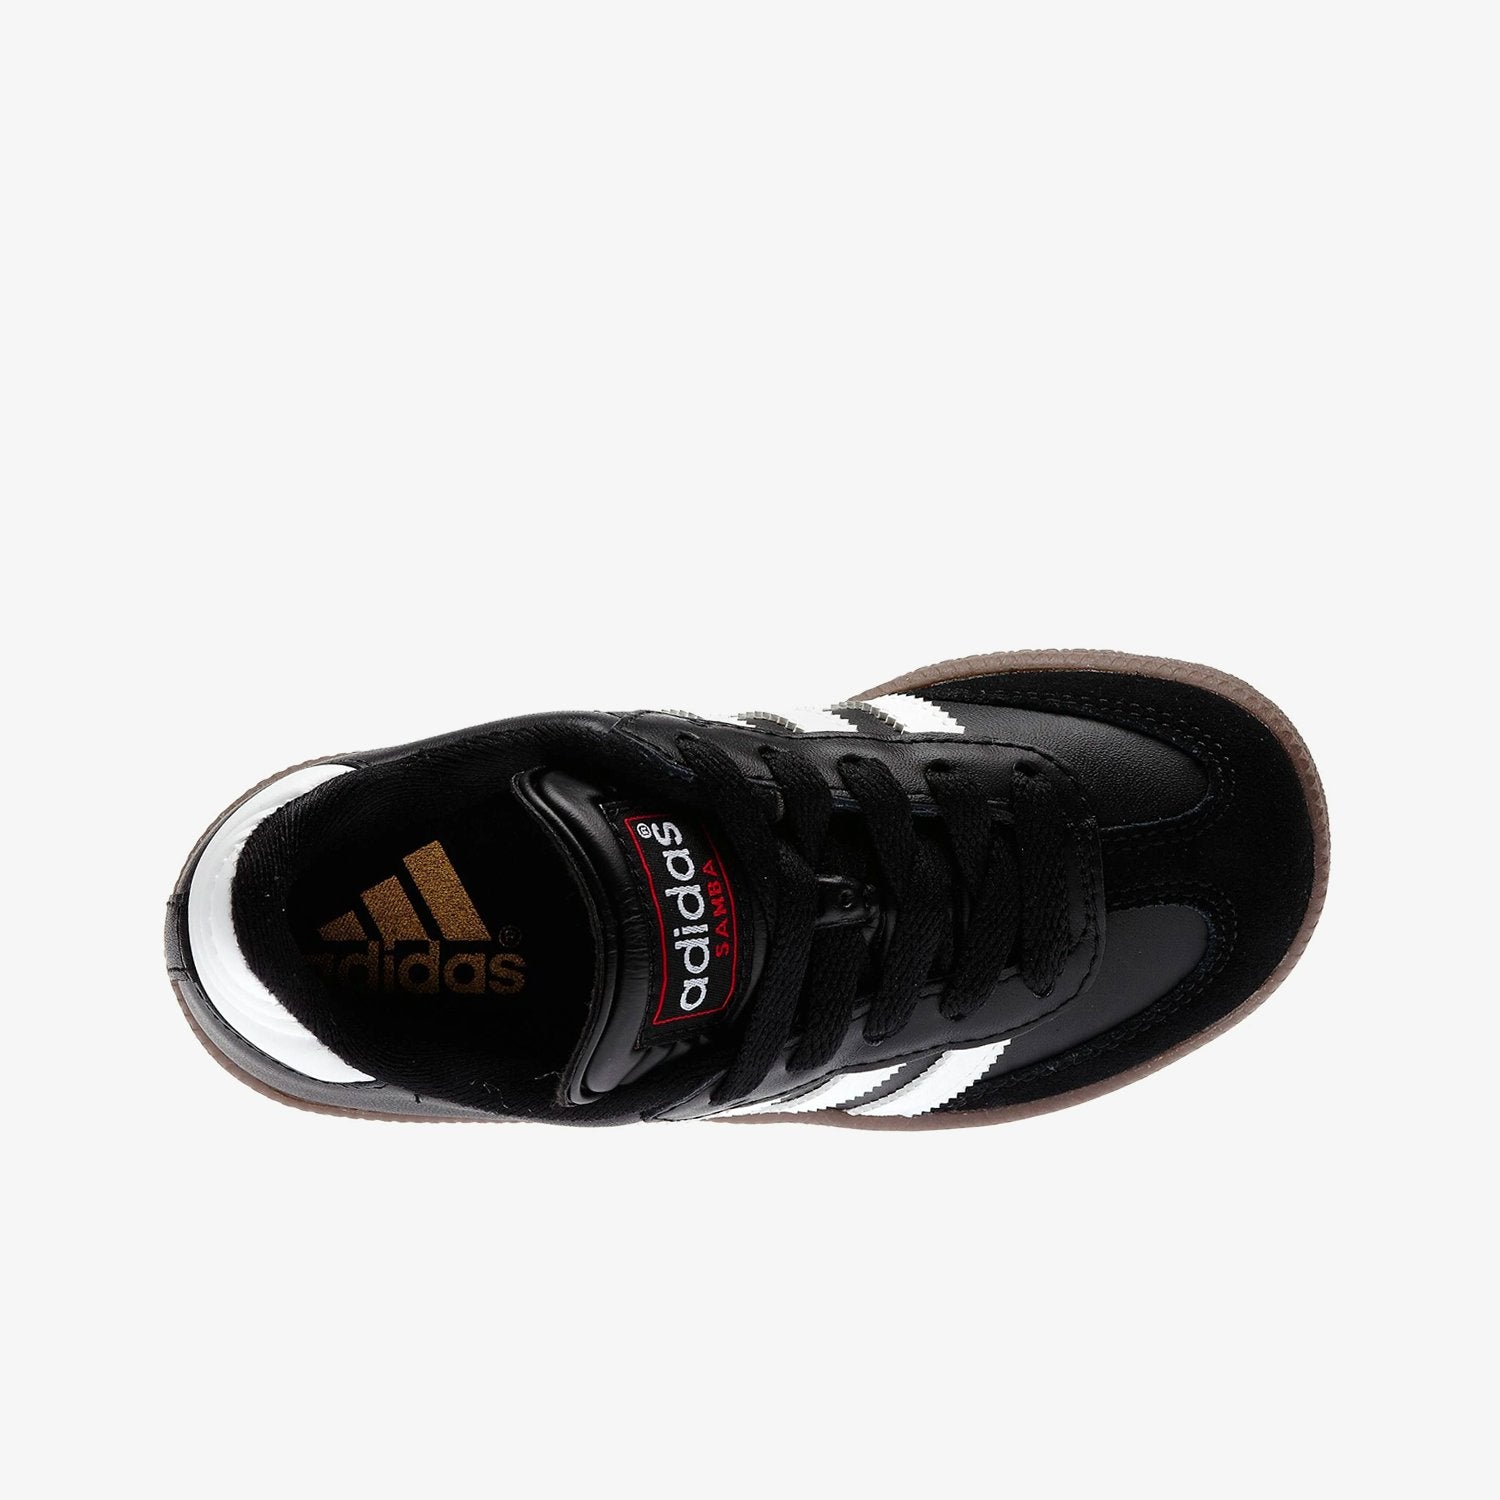 adidas Samba Leather Shoes - Black, Unisex Soccer